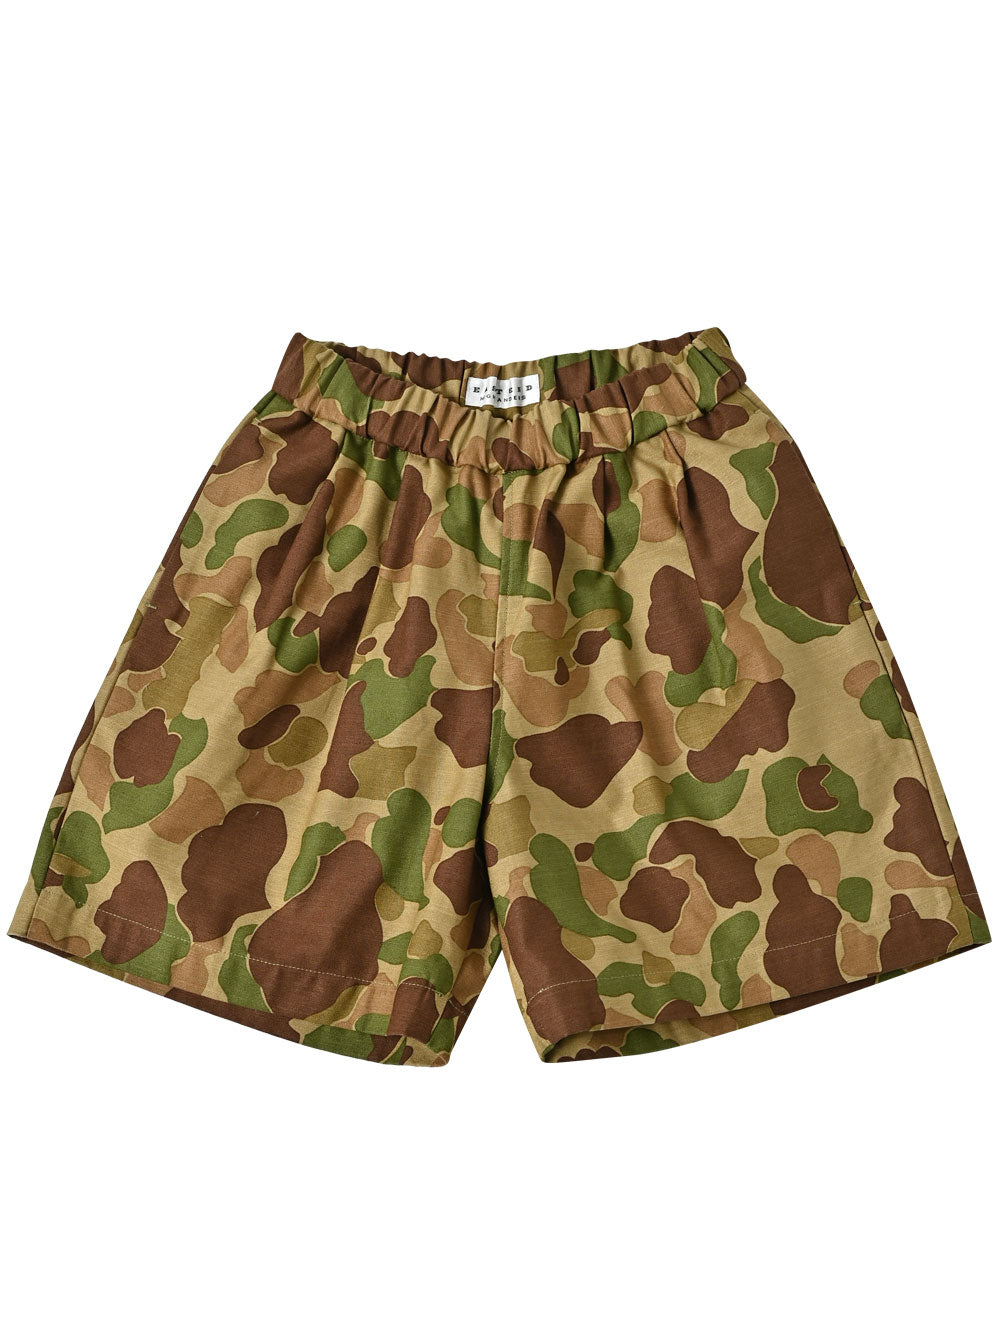 PREORDER: Khaki Camo Shorts